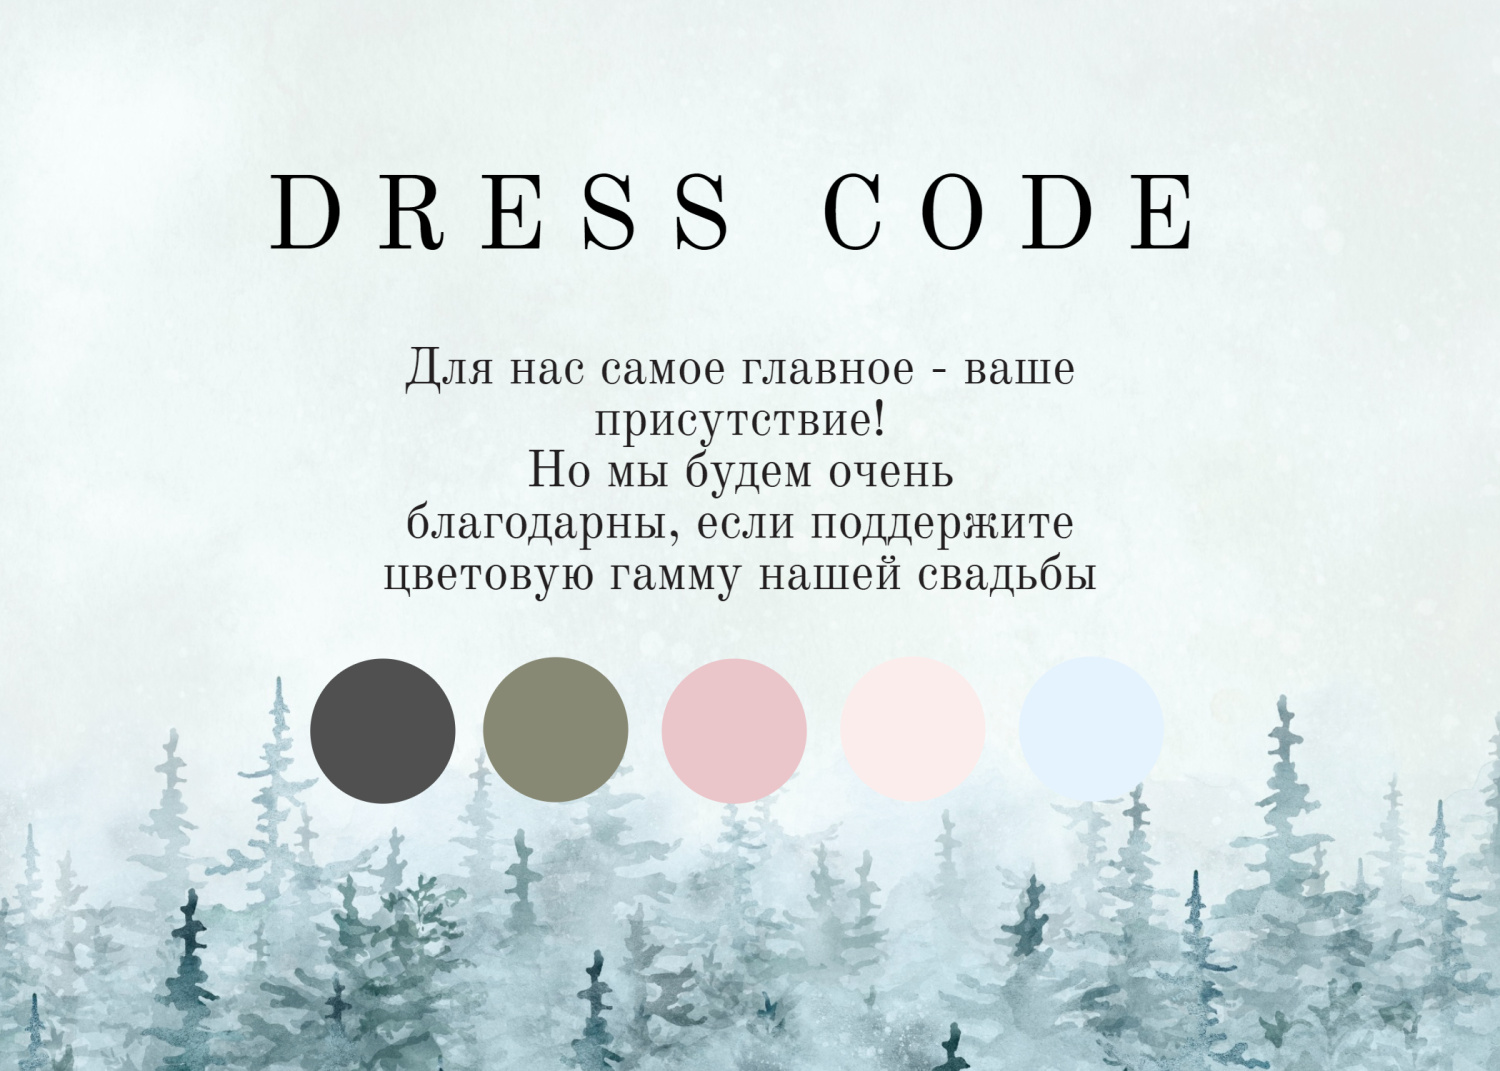 Дресс-код с зимним лесом